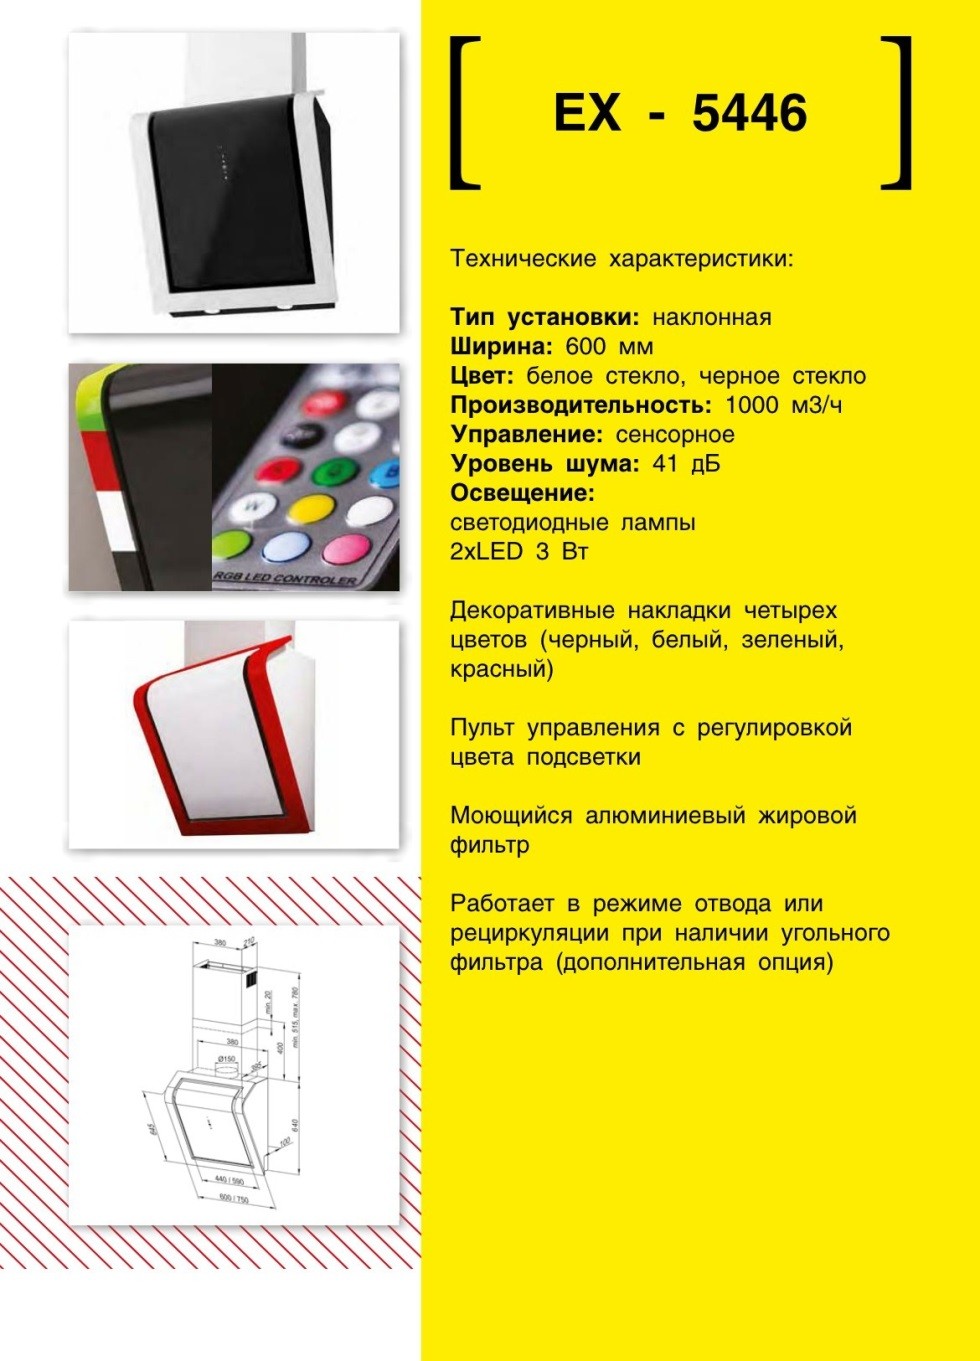 Наклонная вытяжка EXITEQ EX 5446. Продажа встраиваемой техники в Беларуси недорого